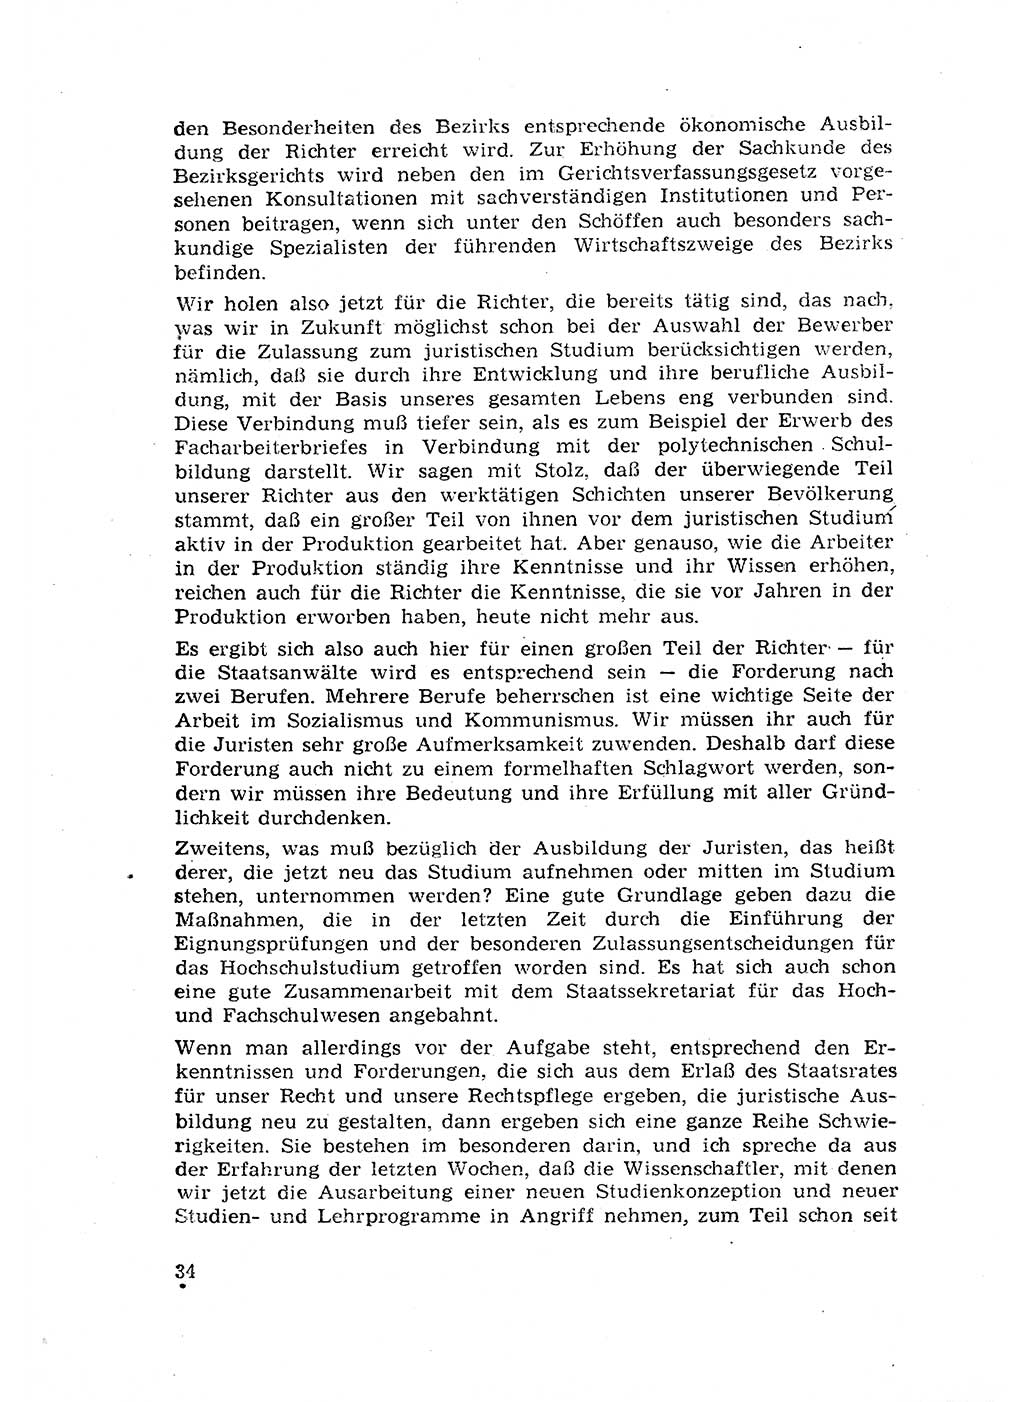 Rechtspflegeerlaß [Deutsche Demokratische Republik (DDR)] 1963, Seite 34 (R.-Pfl.-Erl. DDR 1963, S. 34)